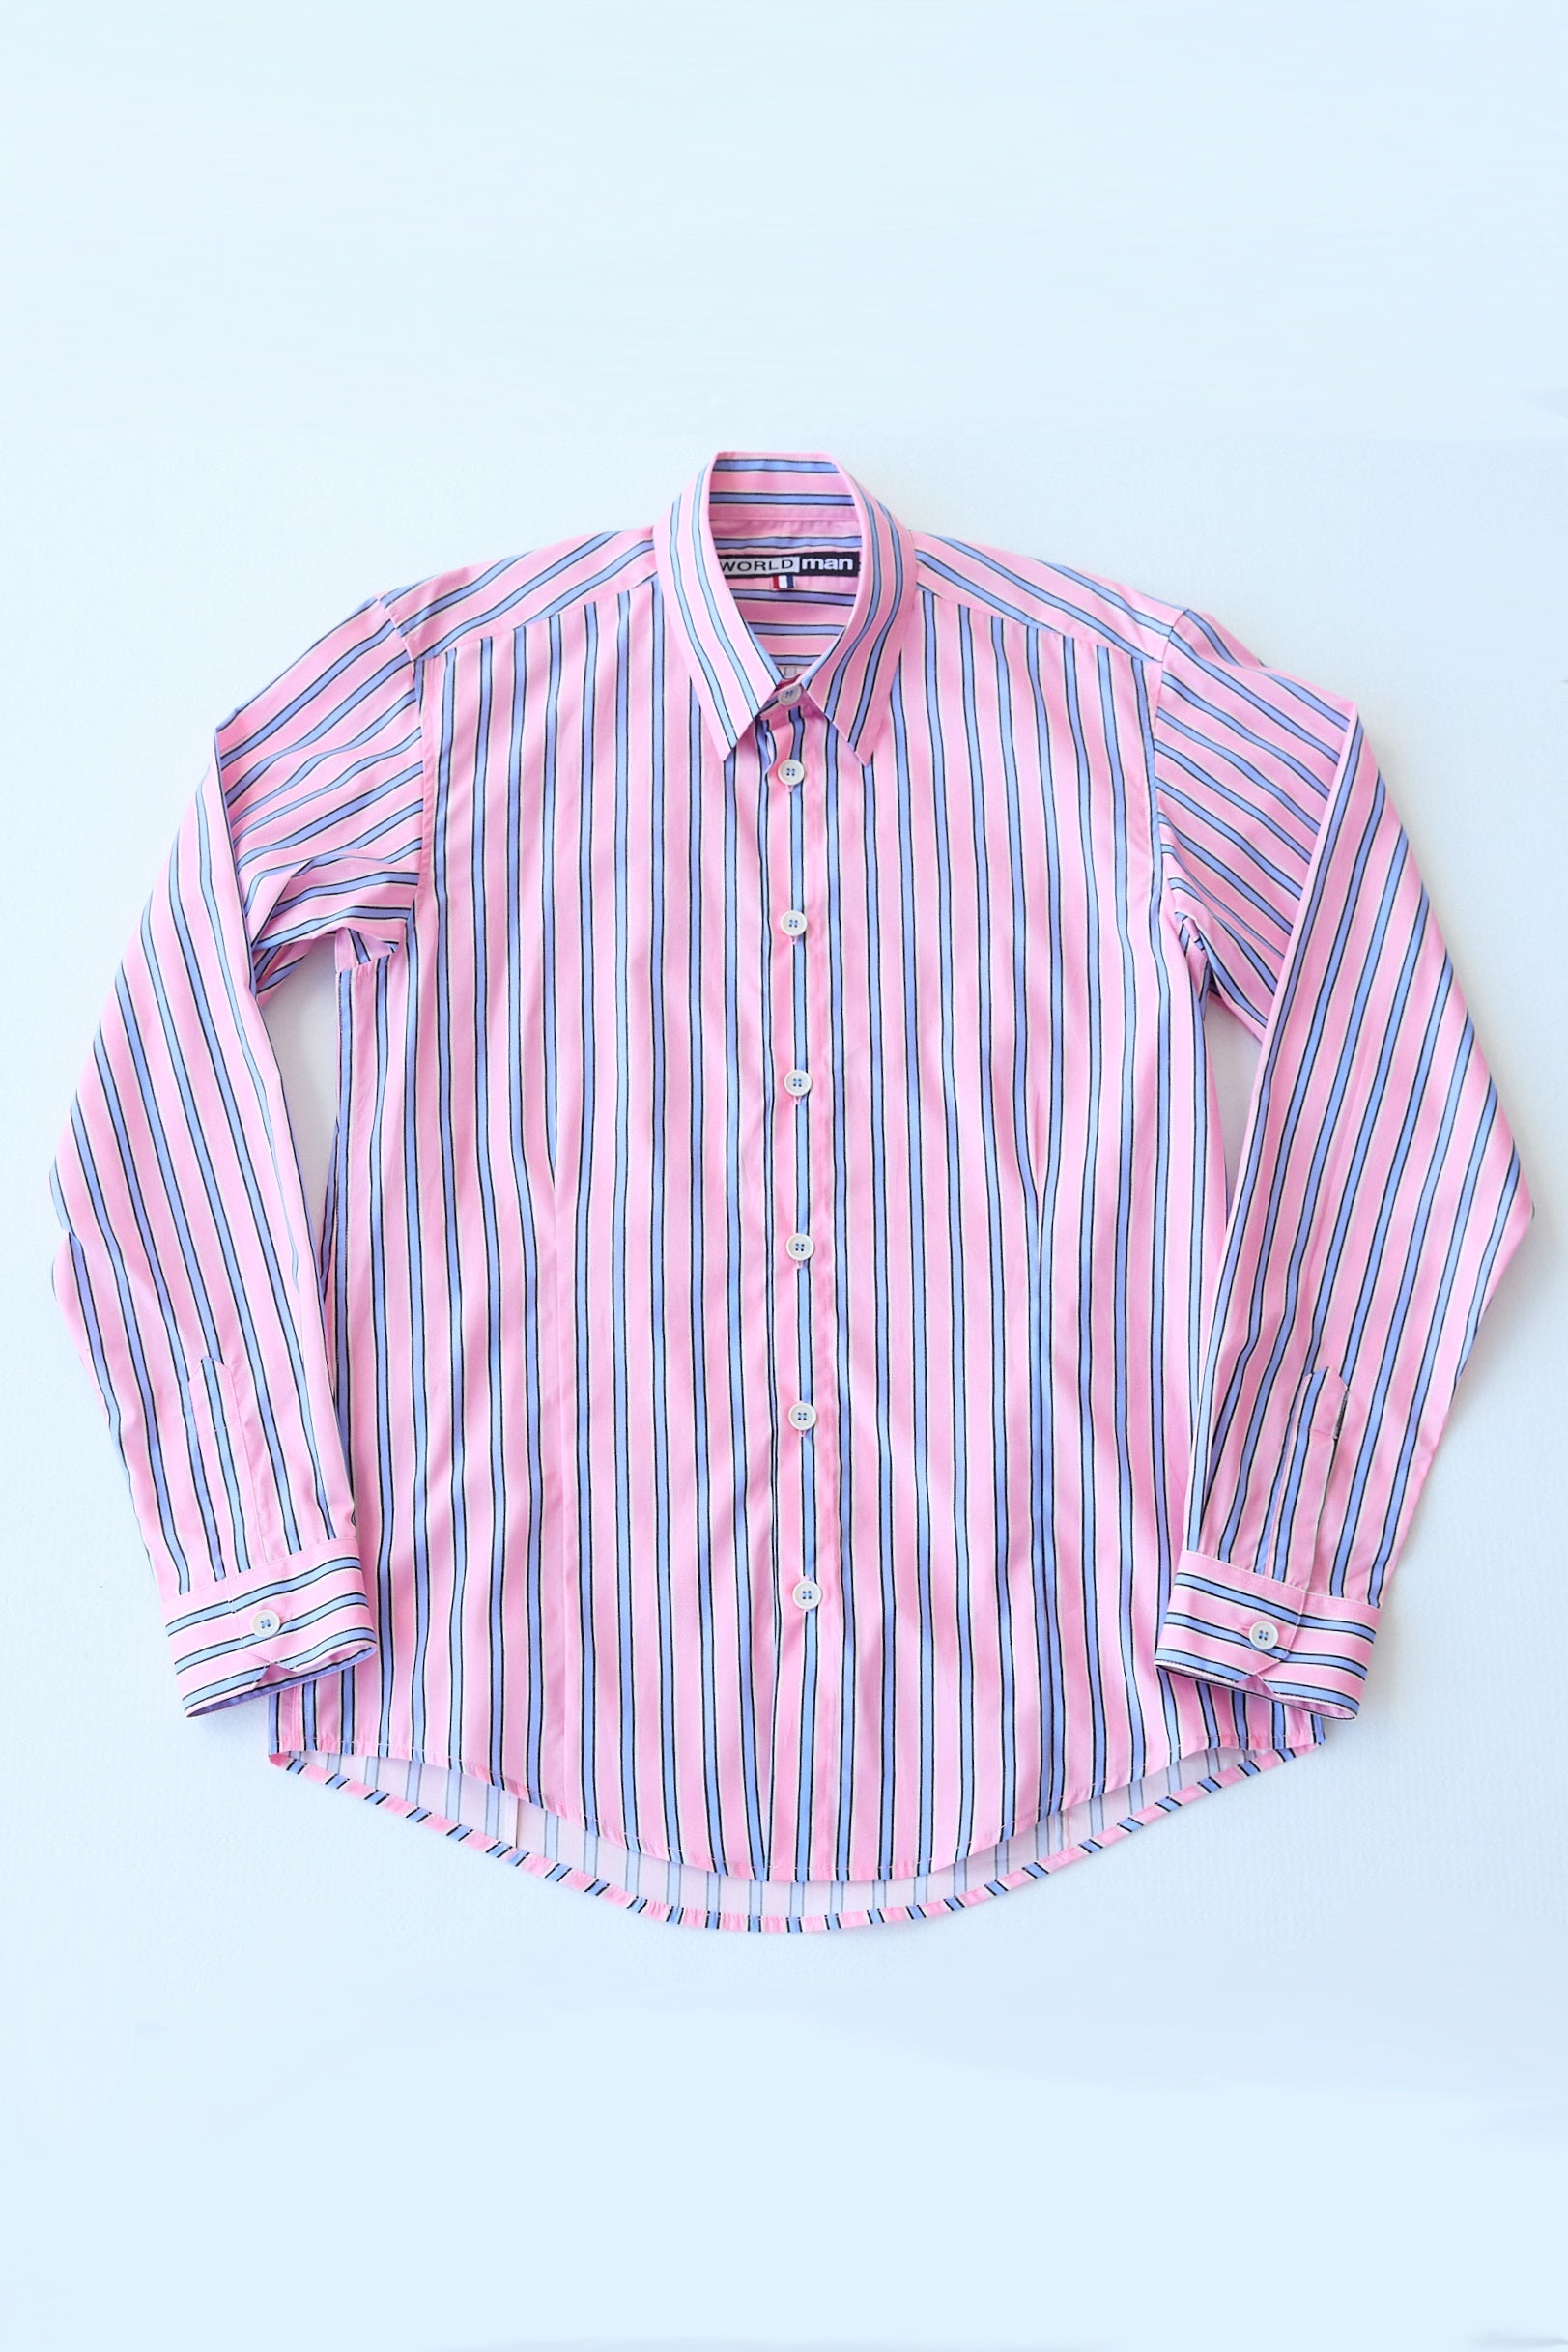 WORLDman 5153a Dvorak Shirt Pink Stripe